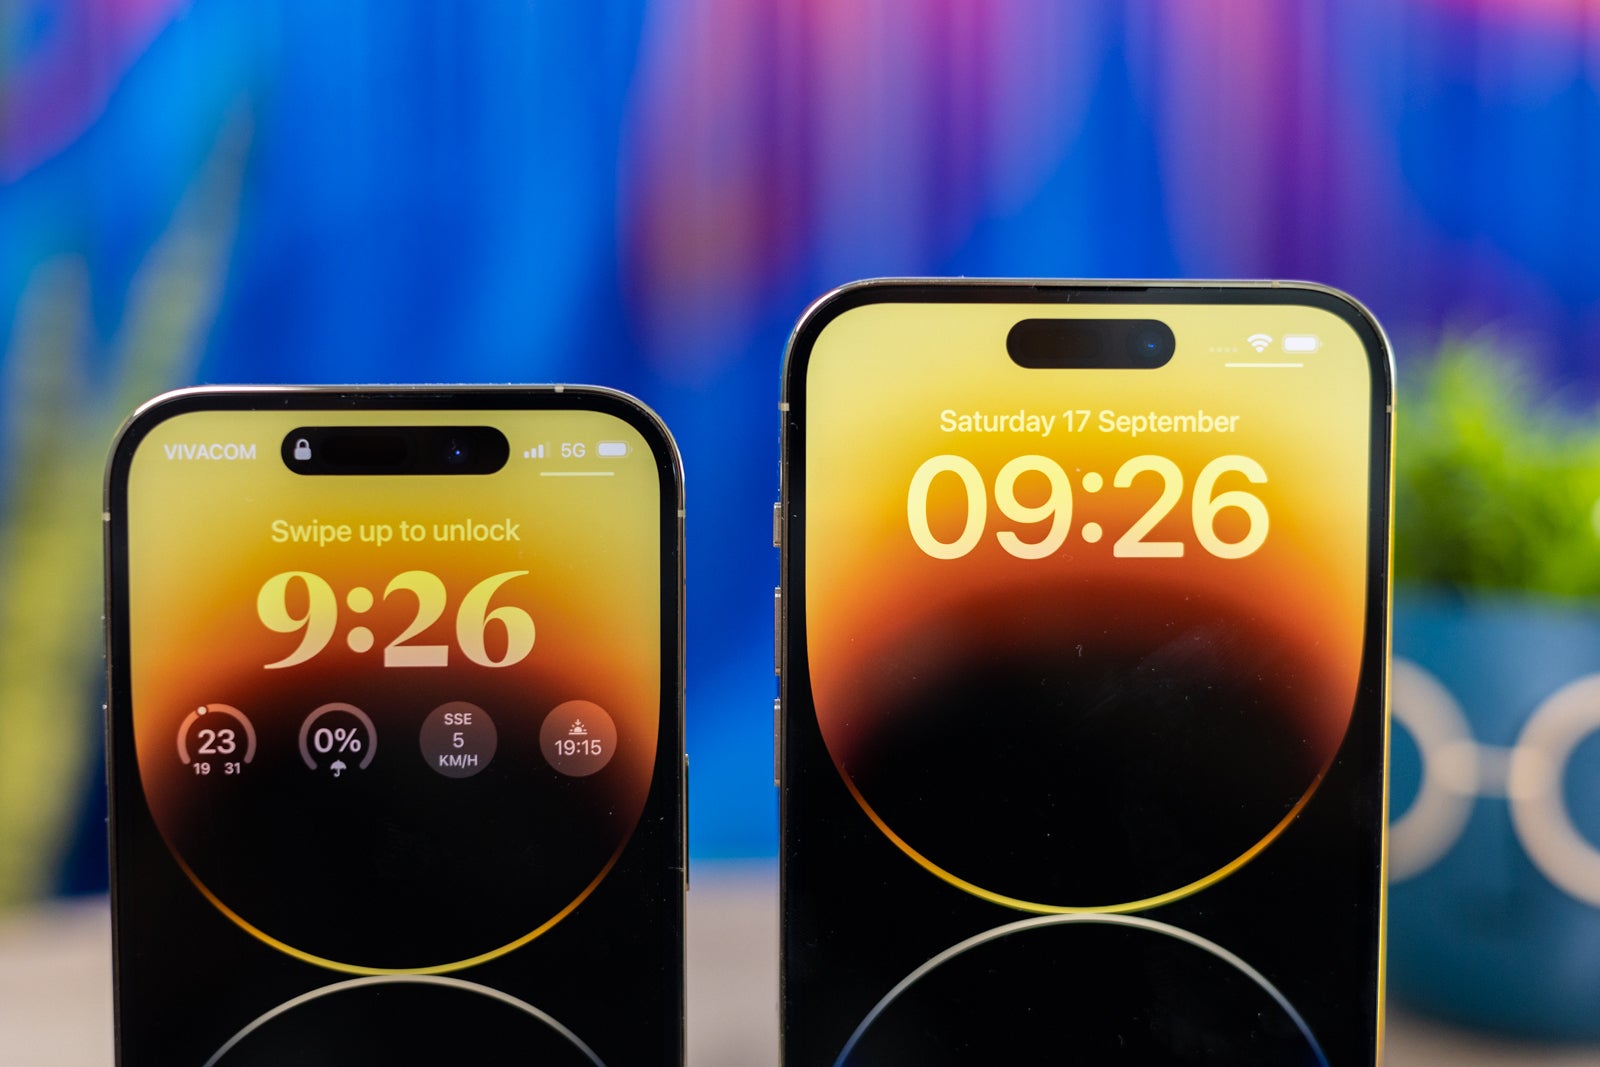 (Credito immagine - PhoneArena) iPhone 14 Pro vs 14 Pro Max Dynamic Island - Apple iPhone 14 Pro Max vs iPhone 14 Pro: scegli le tue dimensioni!